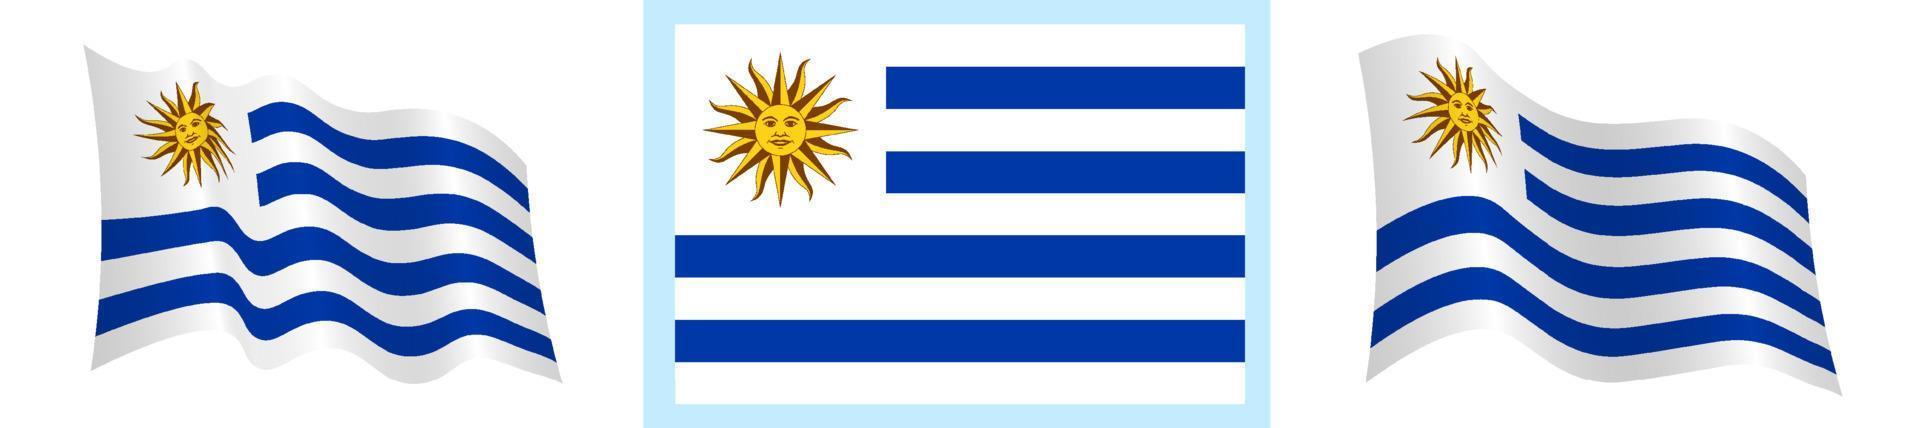 Flagge von Uruguay im statisch Position und im Bewegung, flattern im Wind im genau Farben und Größen, auf Weiß Hintergrund vektor